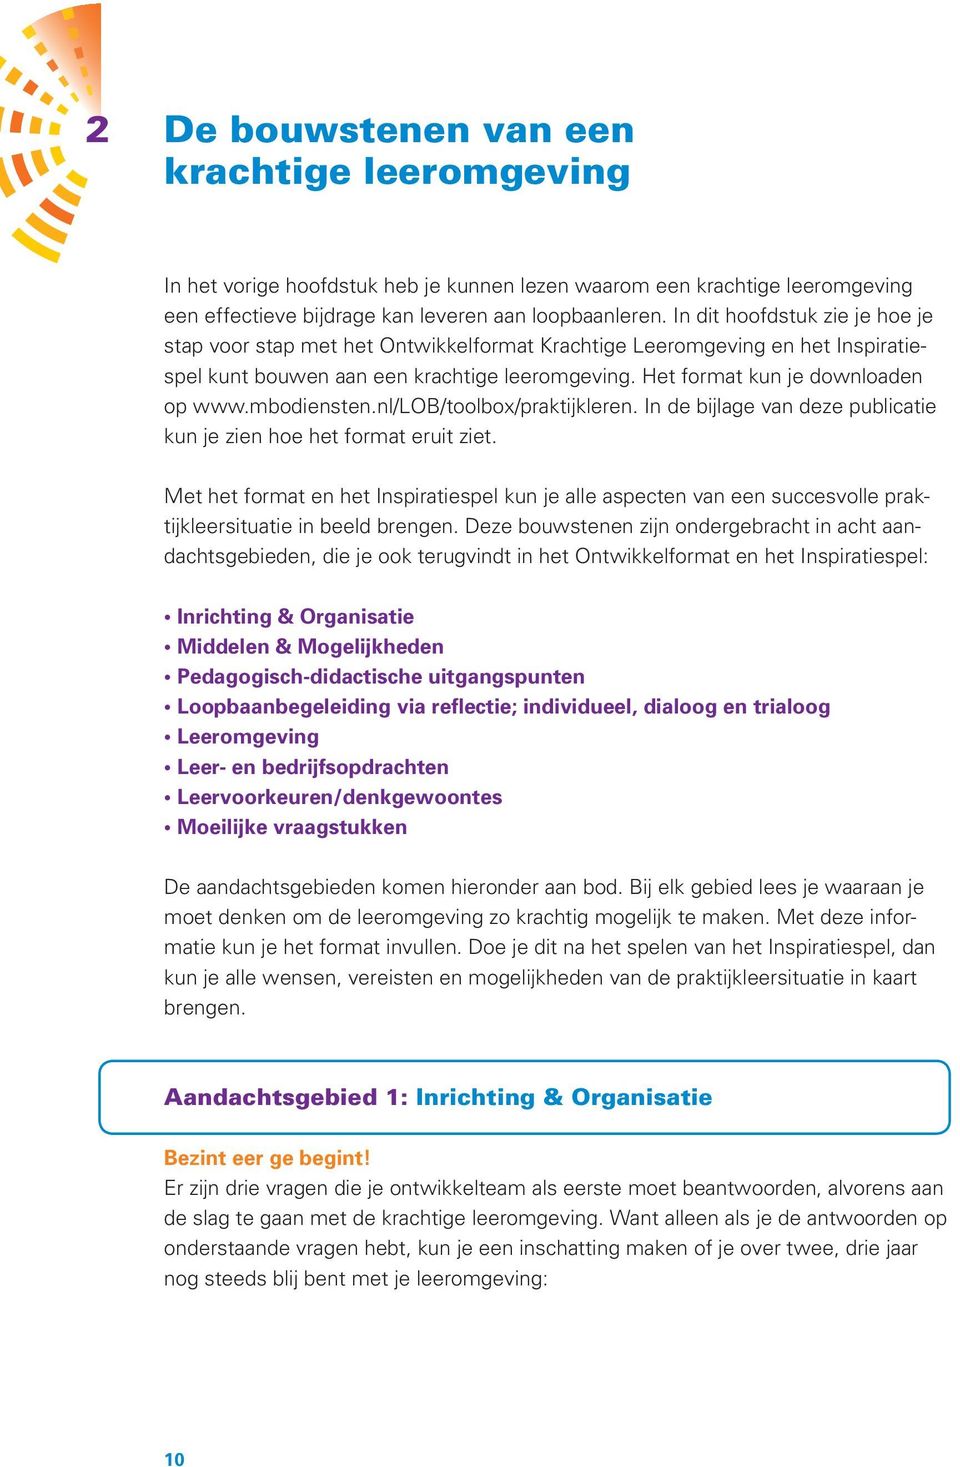 mbodiensten.nl/lob/toolbox/praktijkleren. In de bijlage van deze publicatie kun je zien hoe het format eruit ziet.